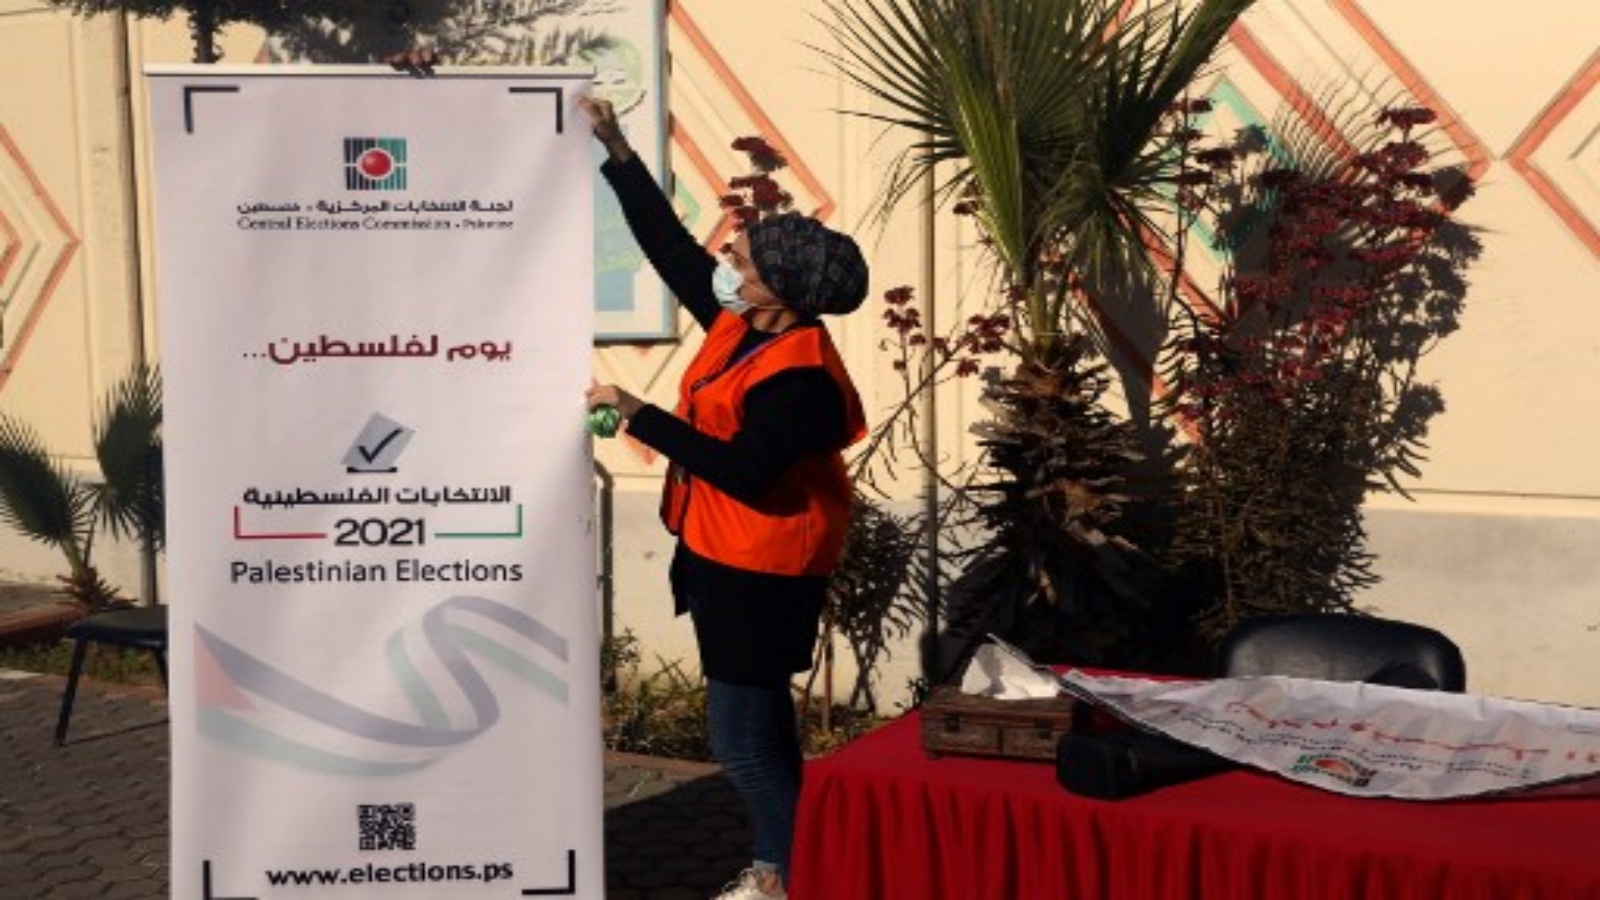 عضو فلسطيني في لجنة الانتخابات المركزية بإعداد نشرة إعلامية بعد افتتاح أول مركز معلومات وتسجيل الناخبين في مدينة غزة في 10 فبراير 2021.